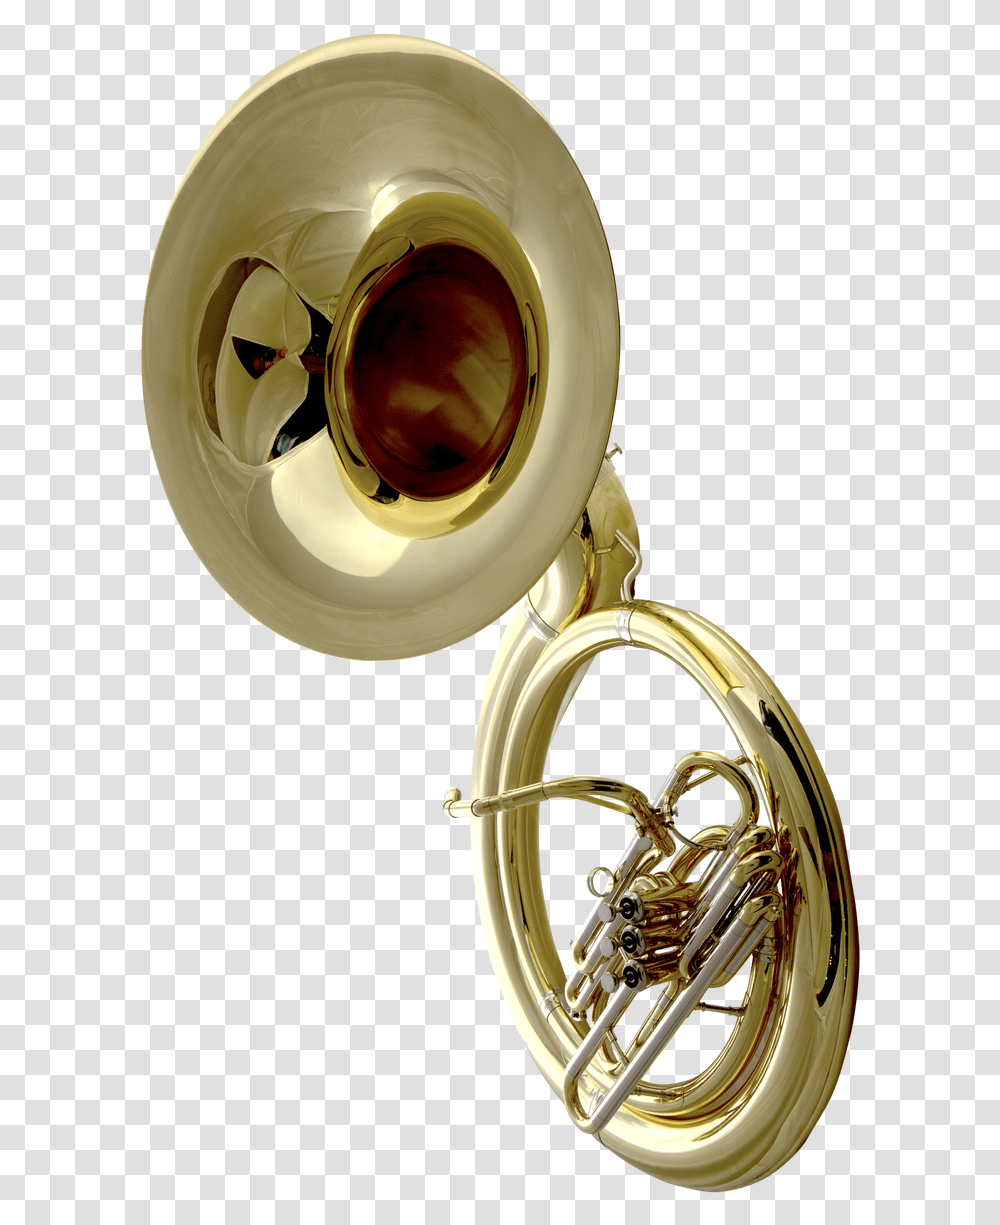 Sousaphone Music Instrument John Packer Sousaphone, Horn, Brass Section, Musical Instrument, French Horn Transparent Png